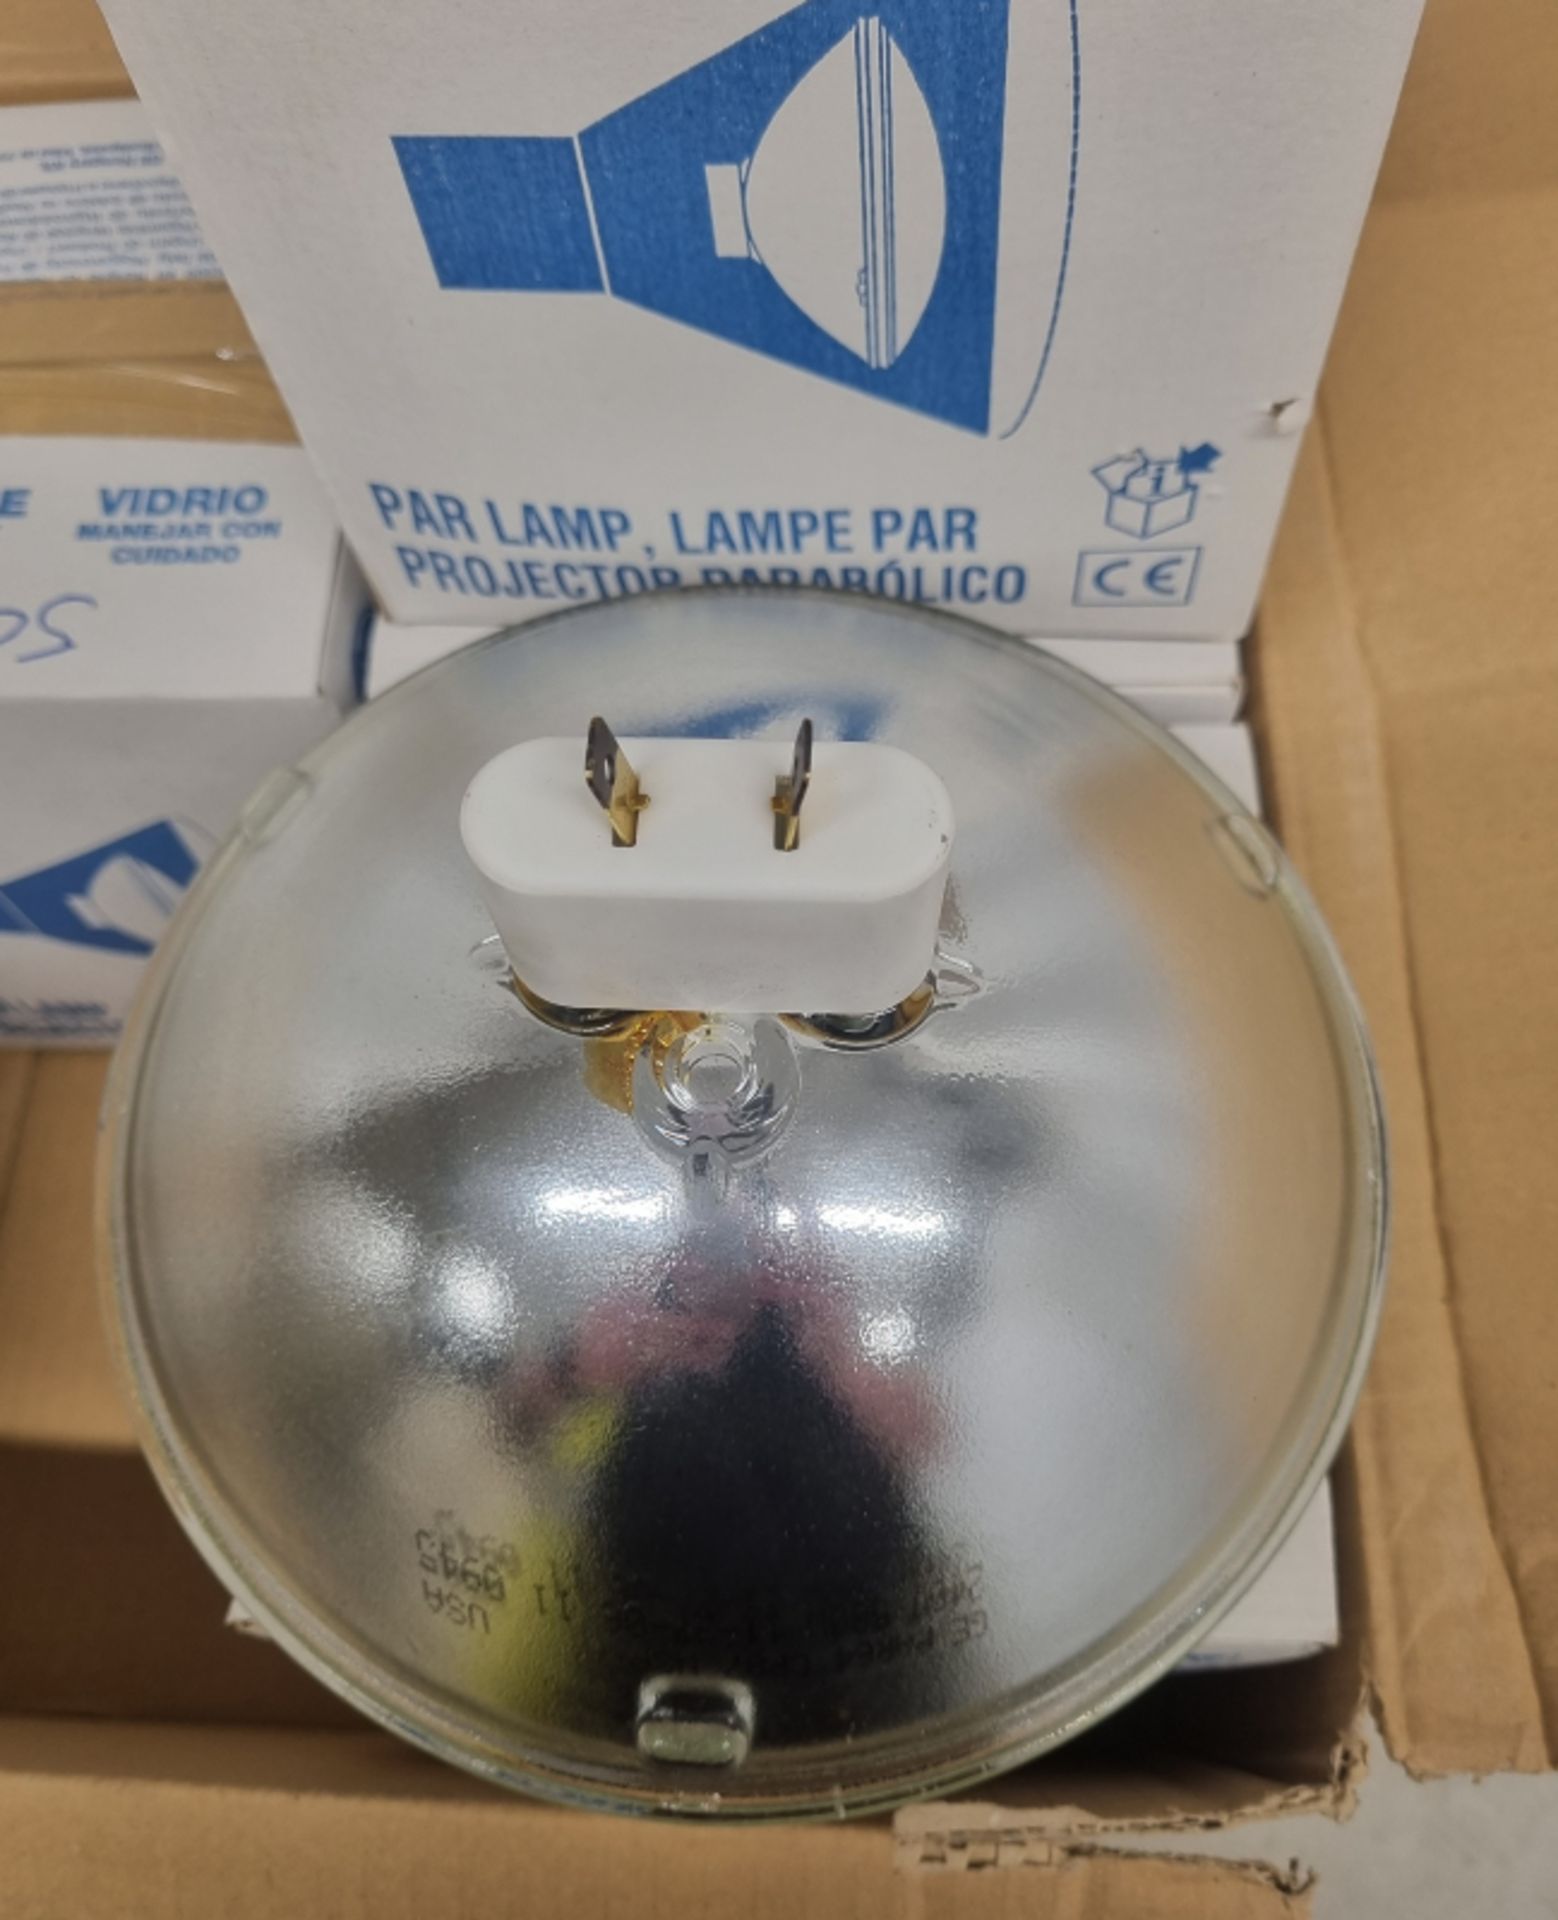 6x Par 64 Lamp 500w - CP87 - Image 4 of 5